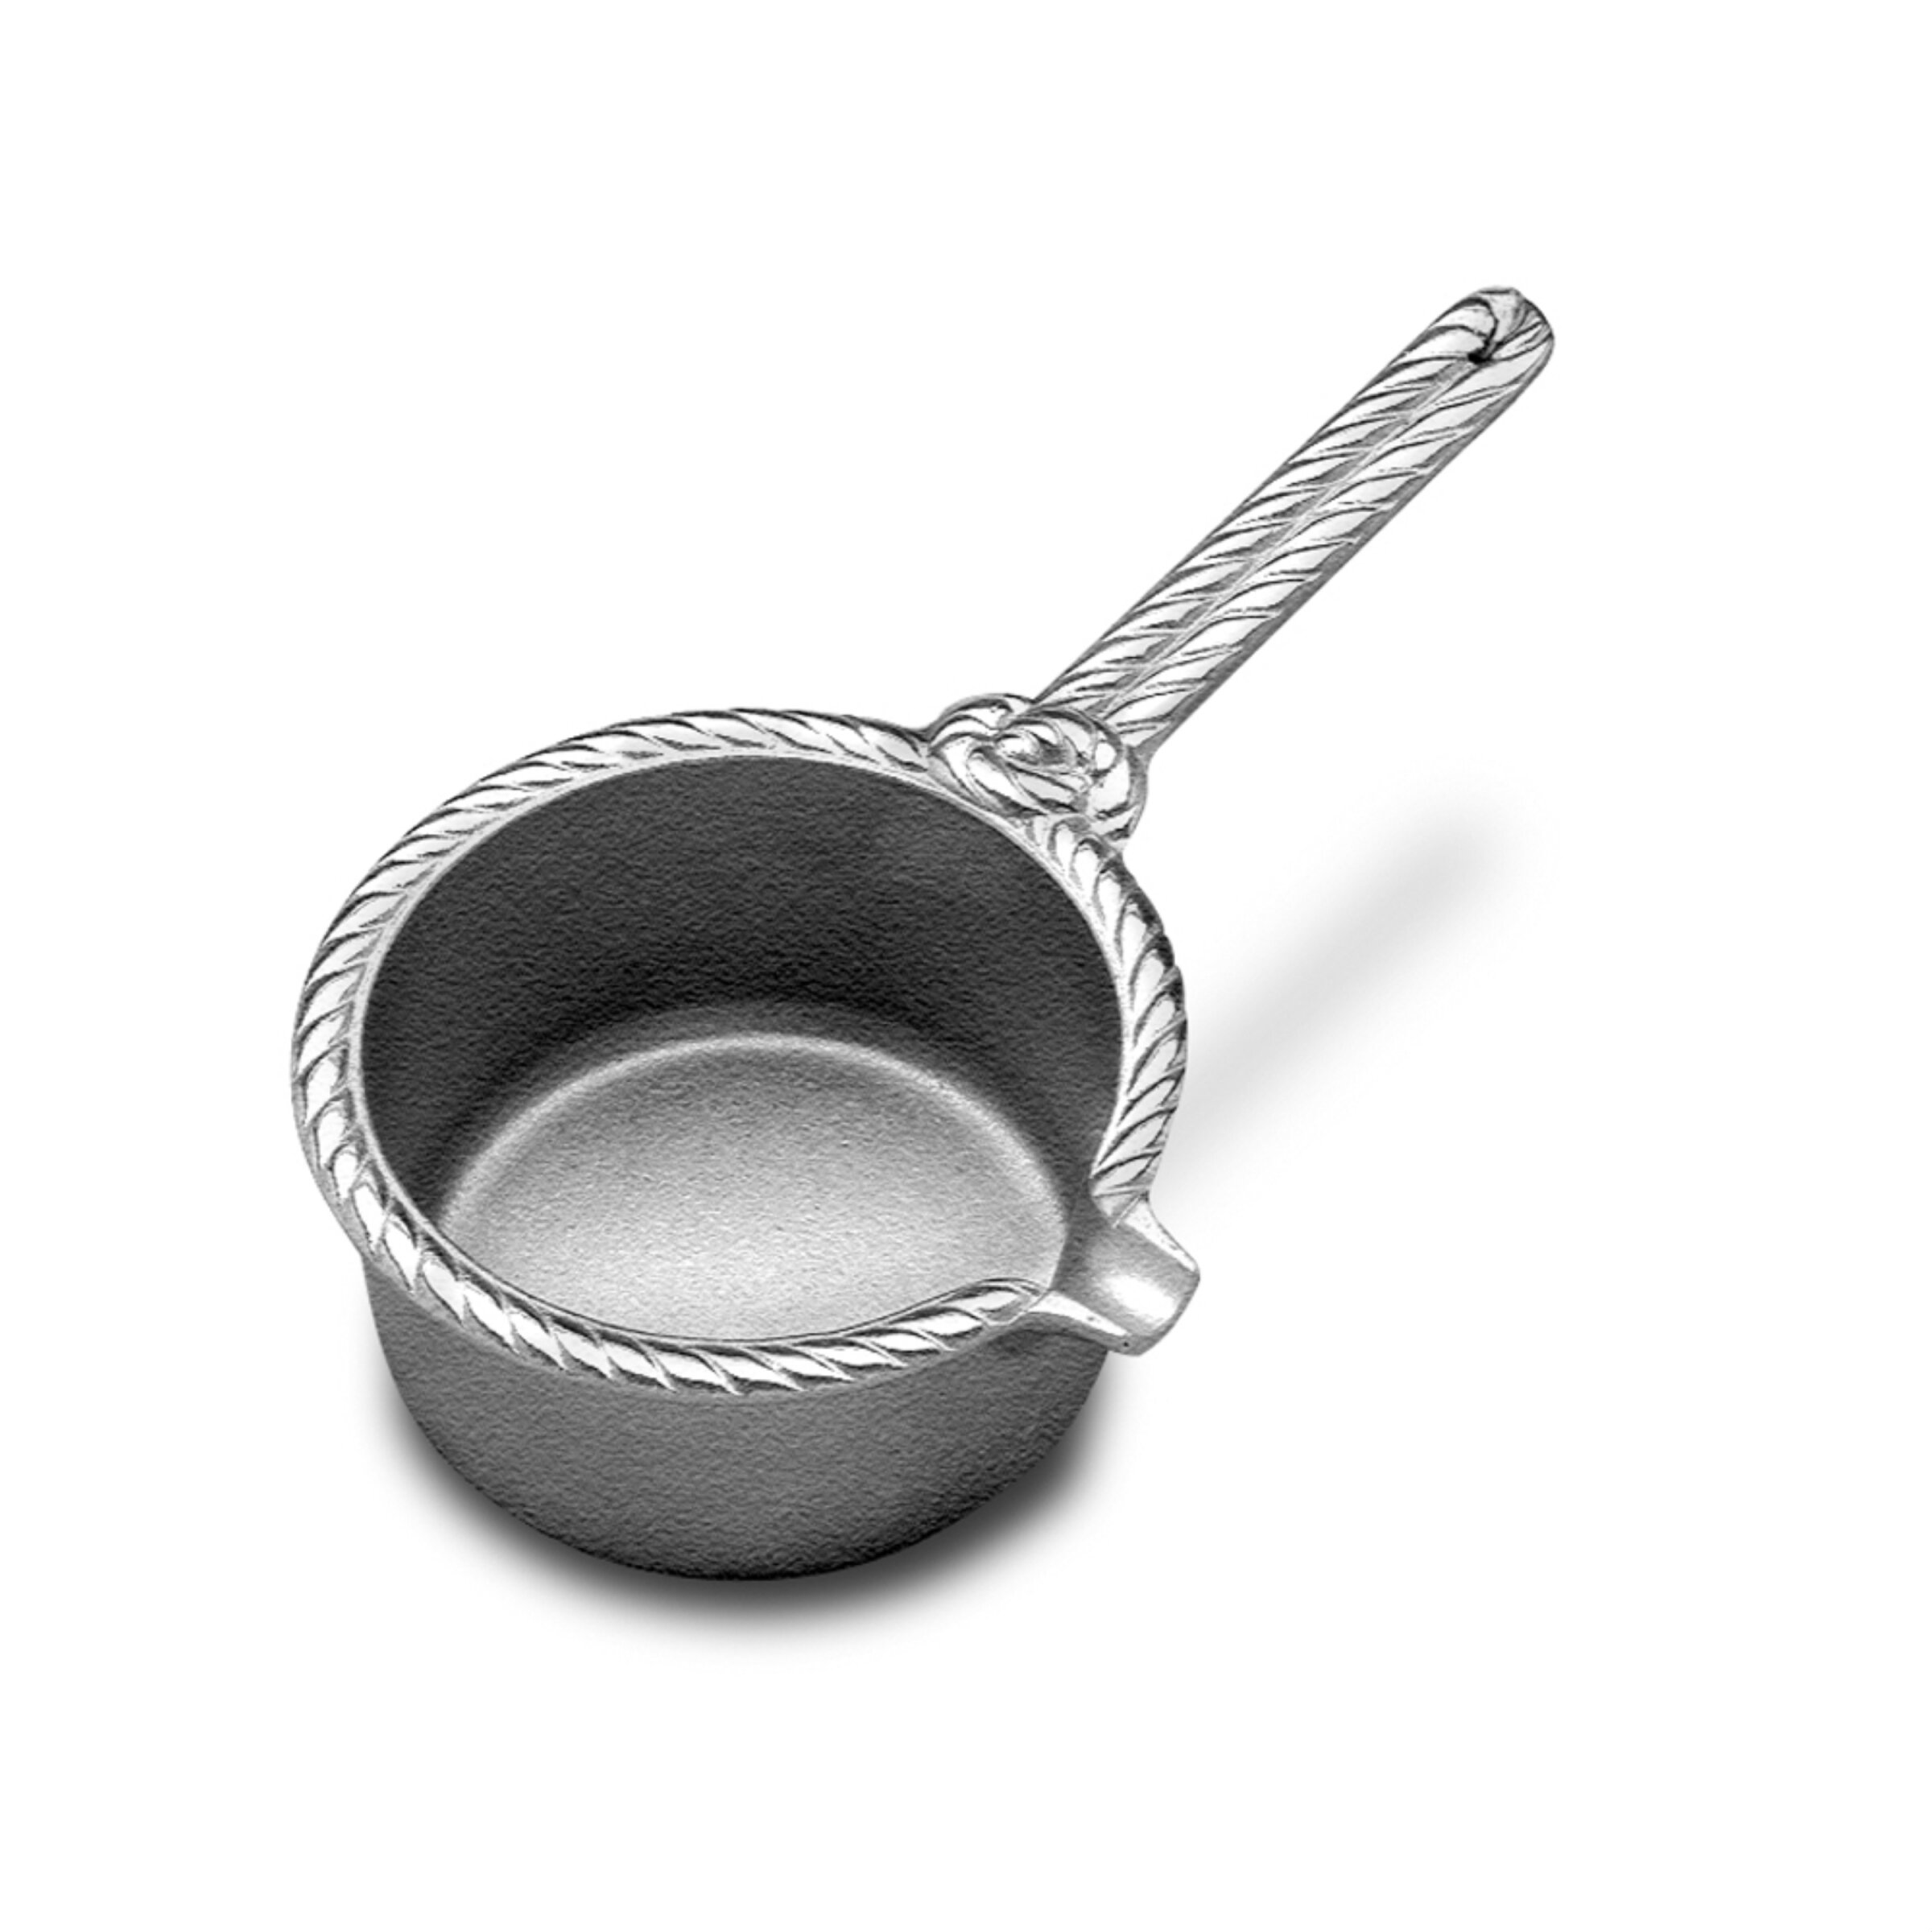 Tiny Sauce Pan 